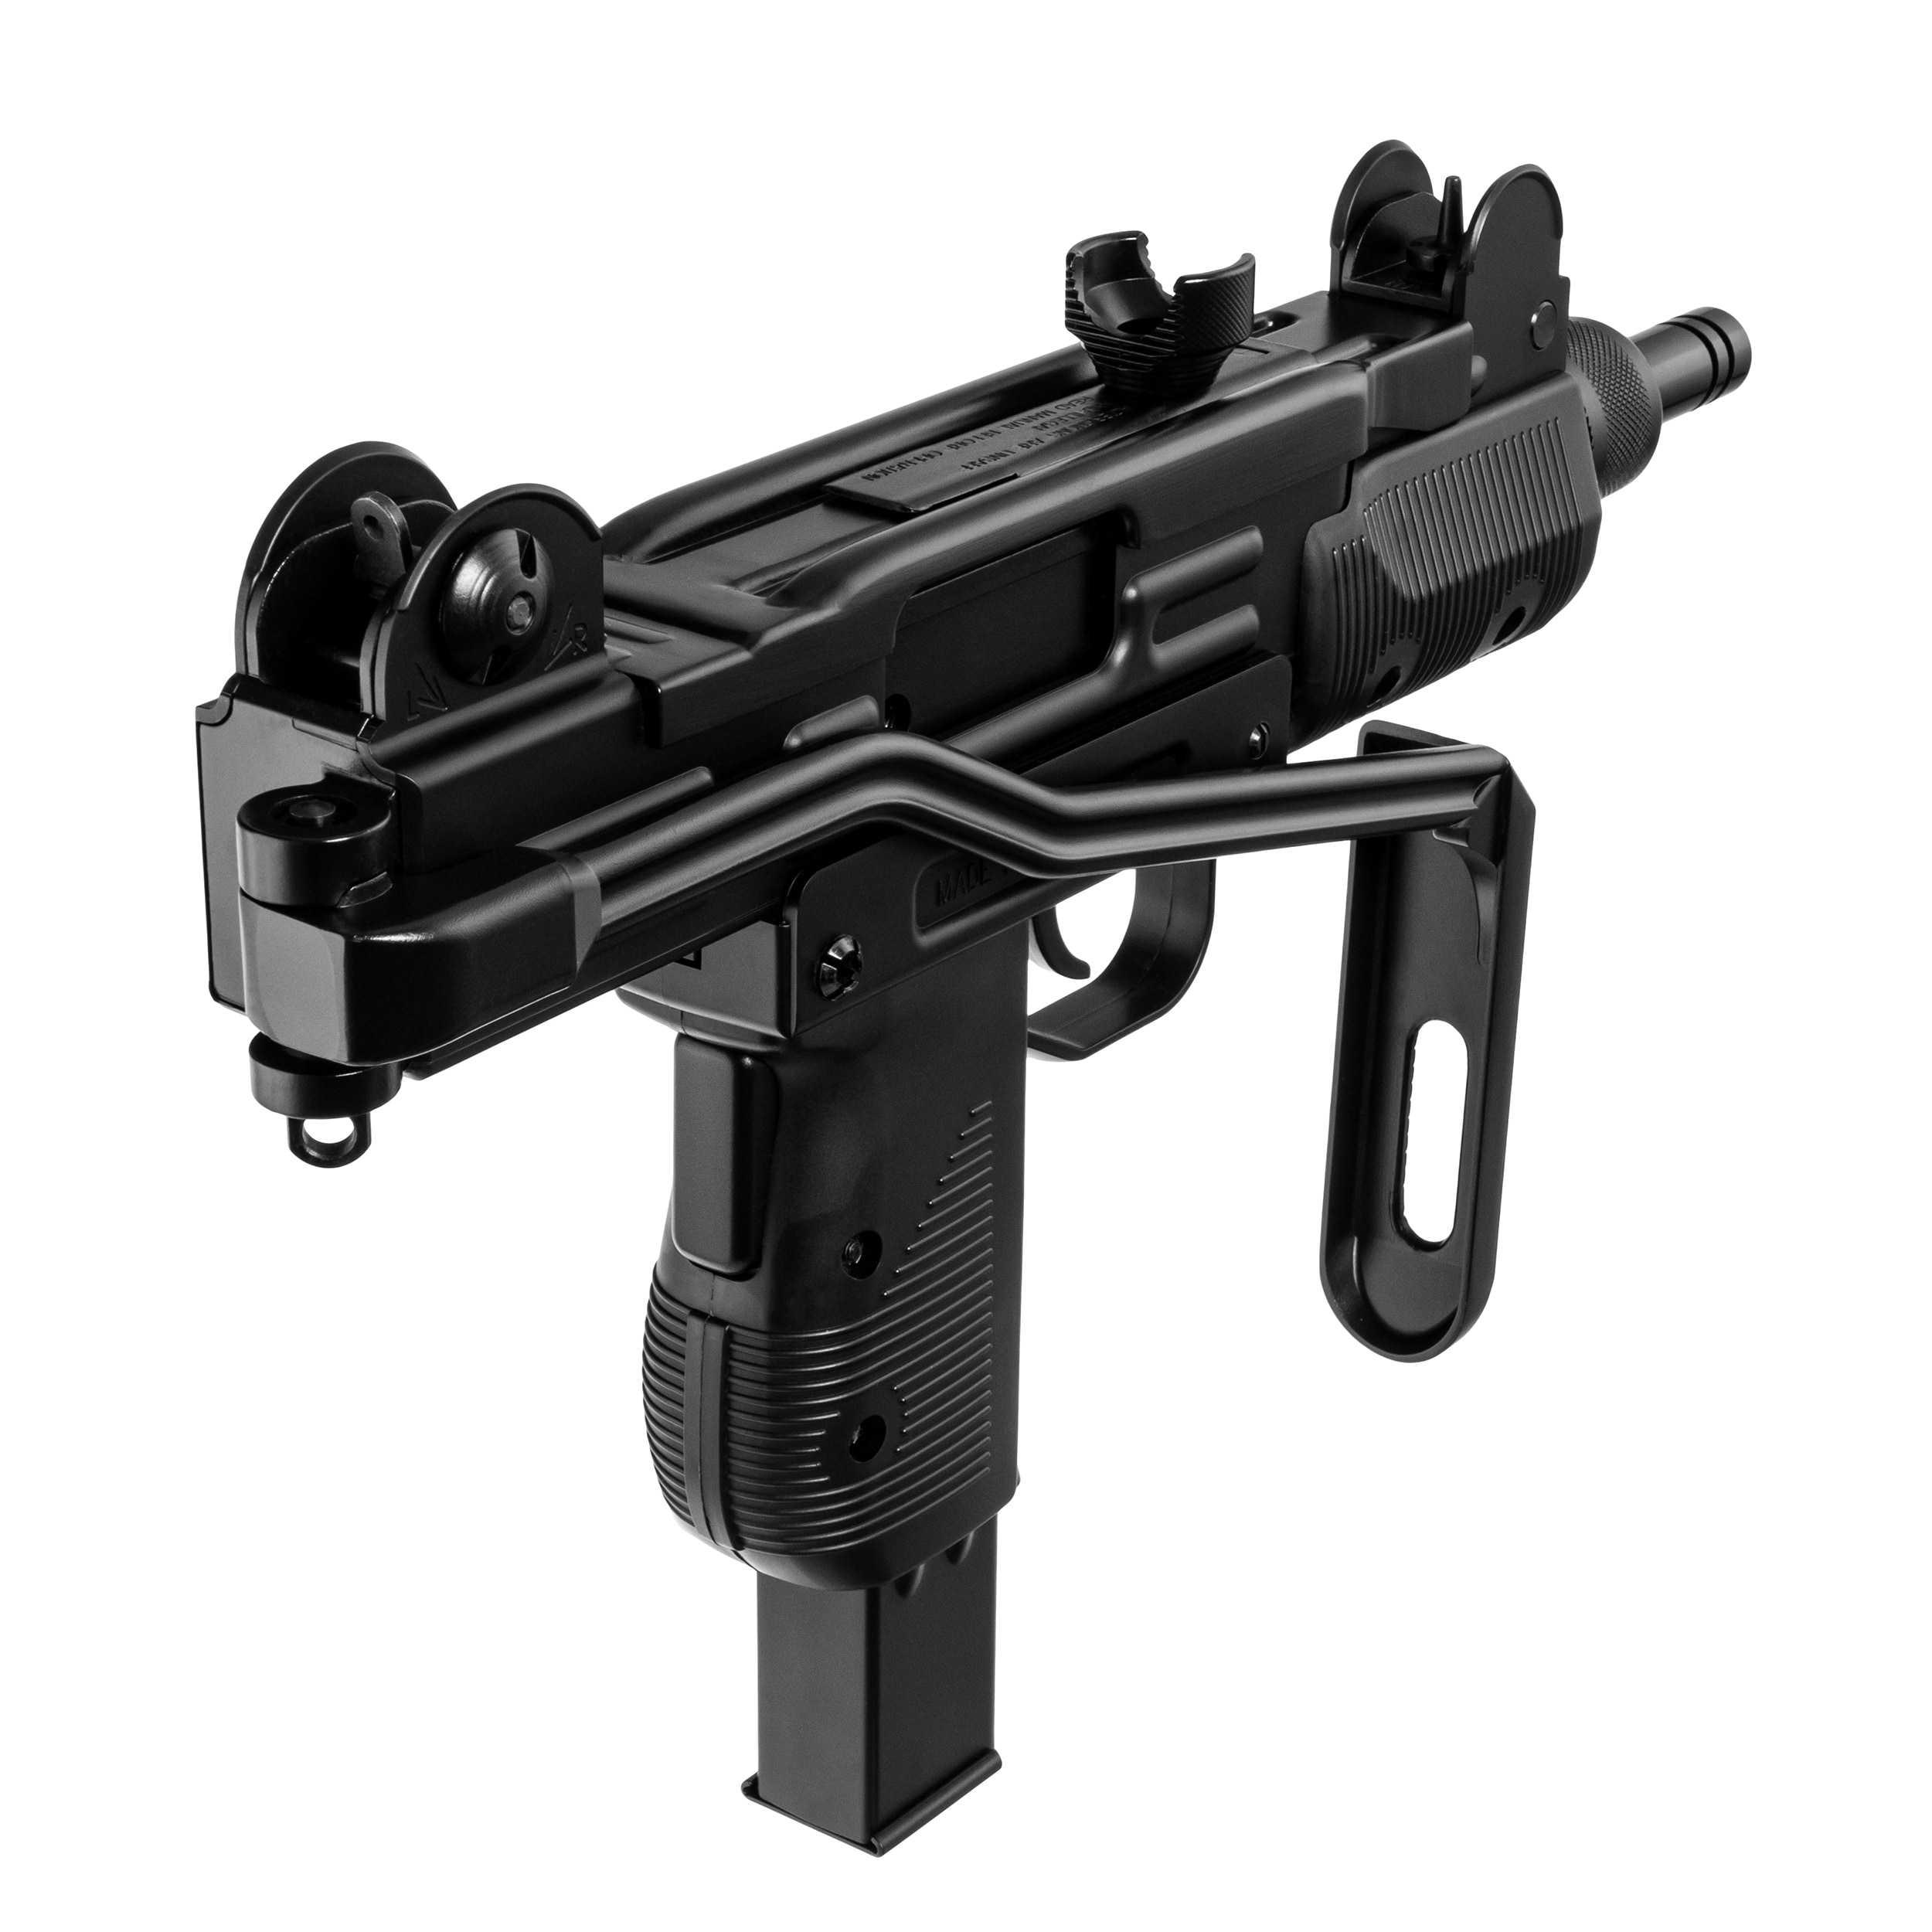 Wiatrówka GBB Cybergun Swiss Arms Protector Mini Uzi Full Auto 4,5 mm